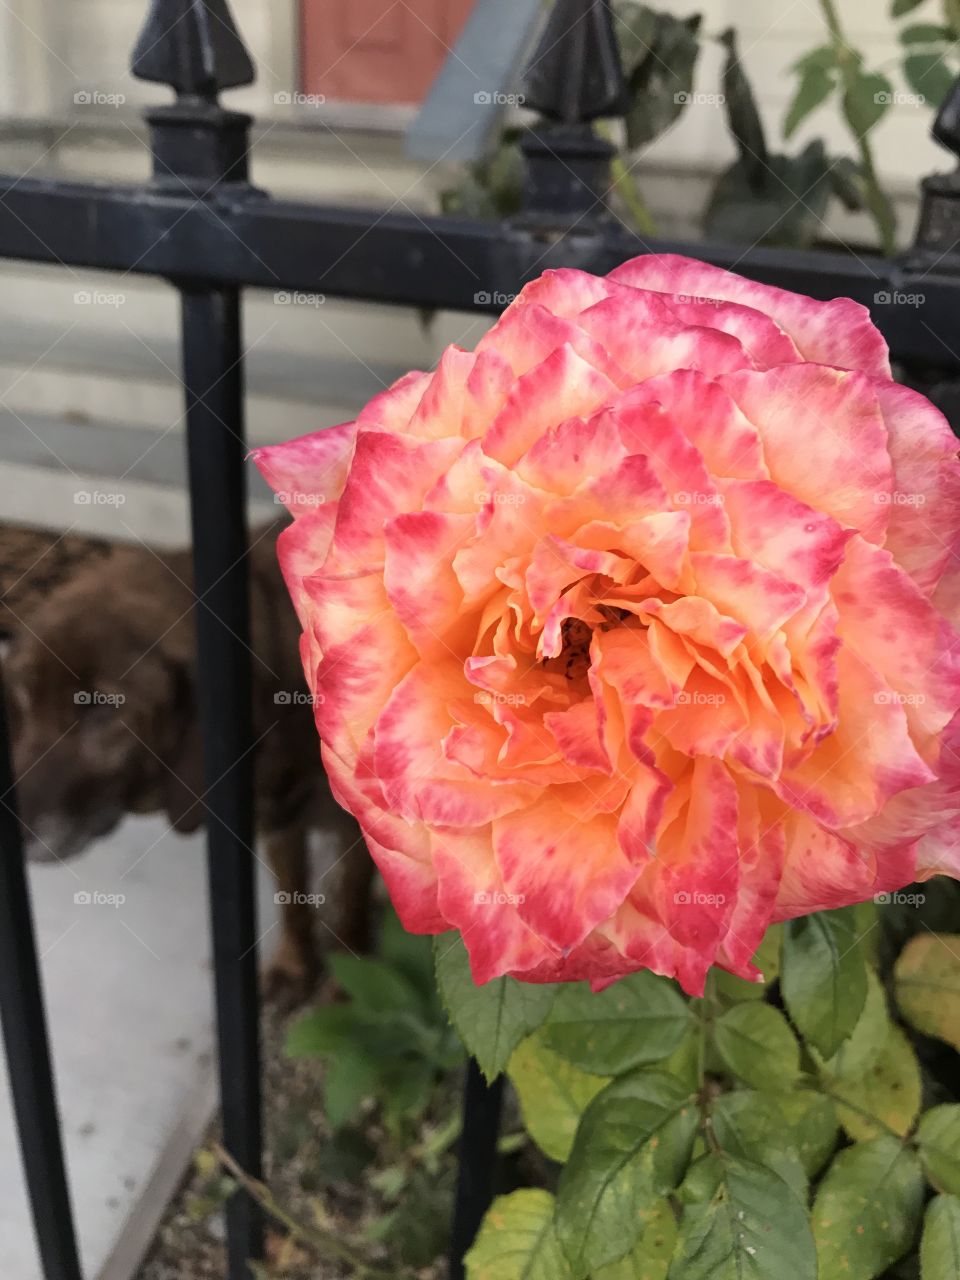 Garden rose blush orange pink with dog